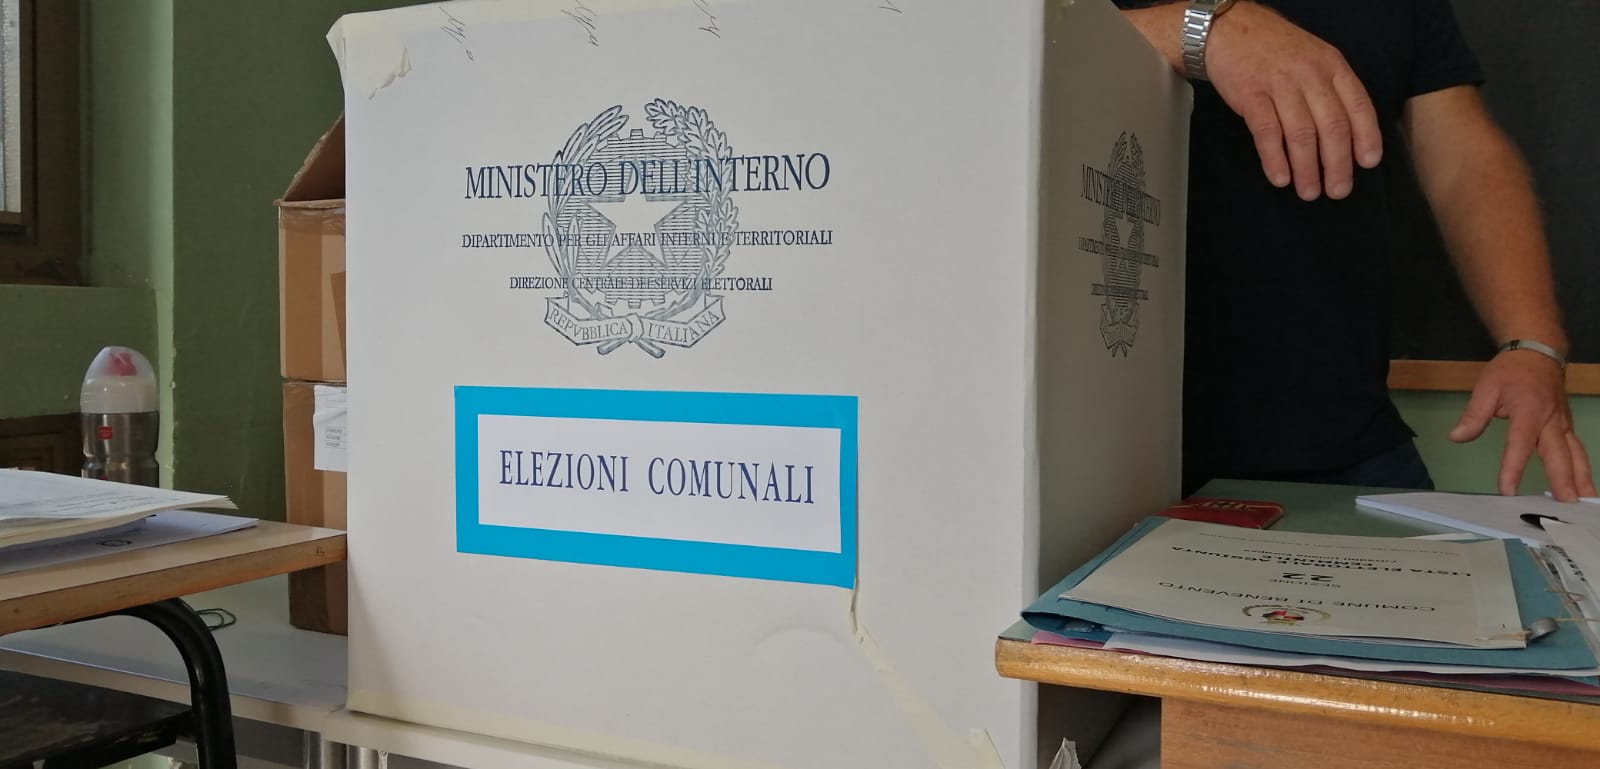 Amministrative in Campania: solo due detenuti hanno chiesto di esercitare il loro diritto al voto. Ciambriello: disinteresse verso la politica